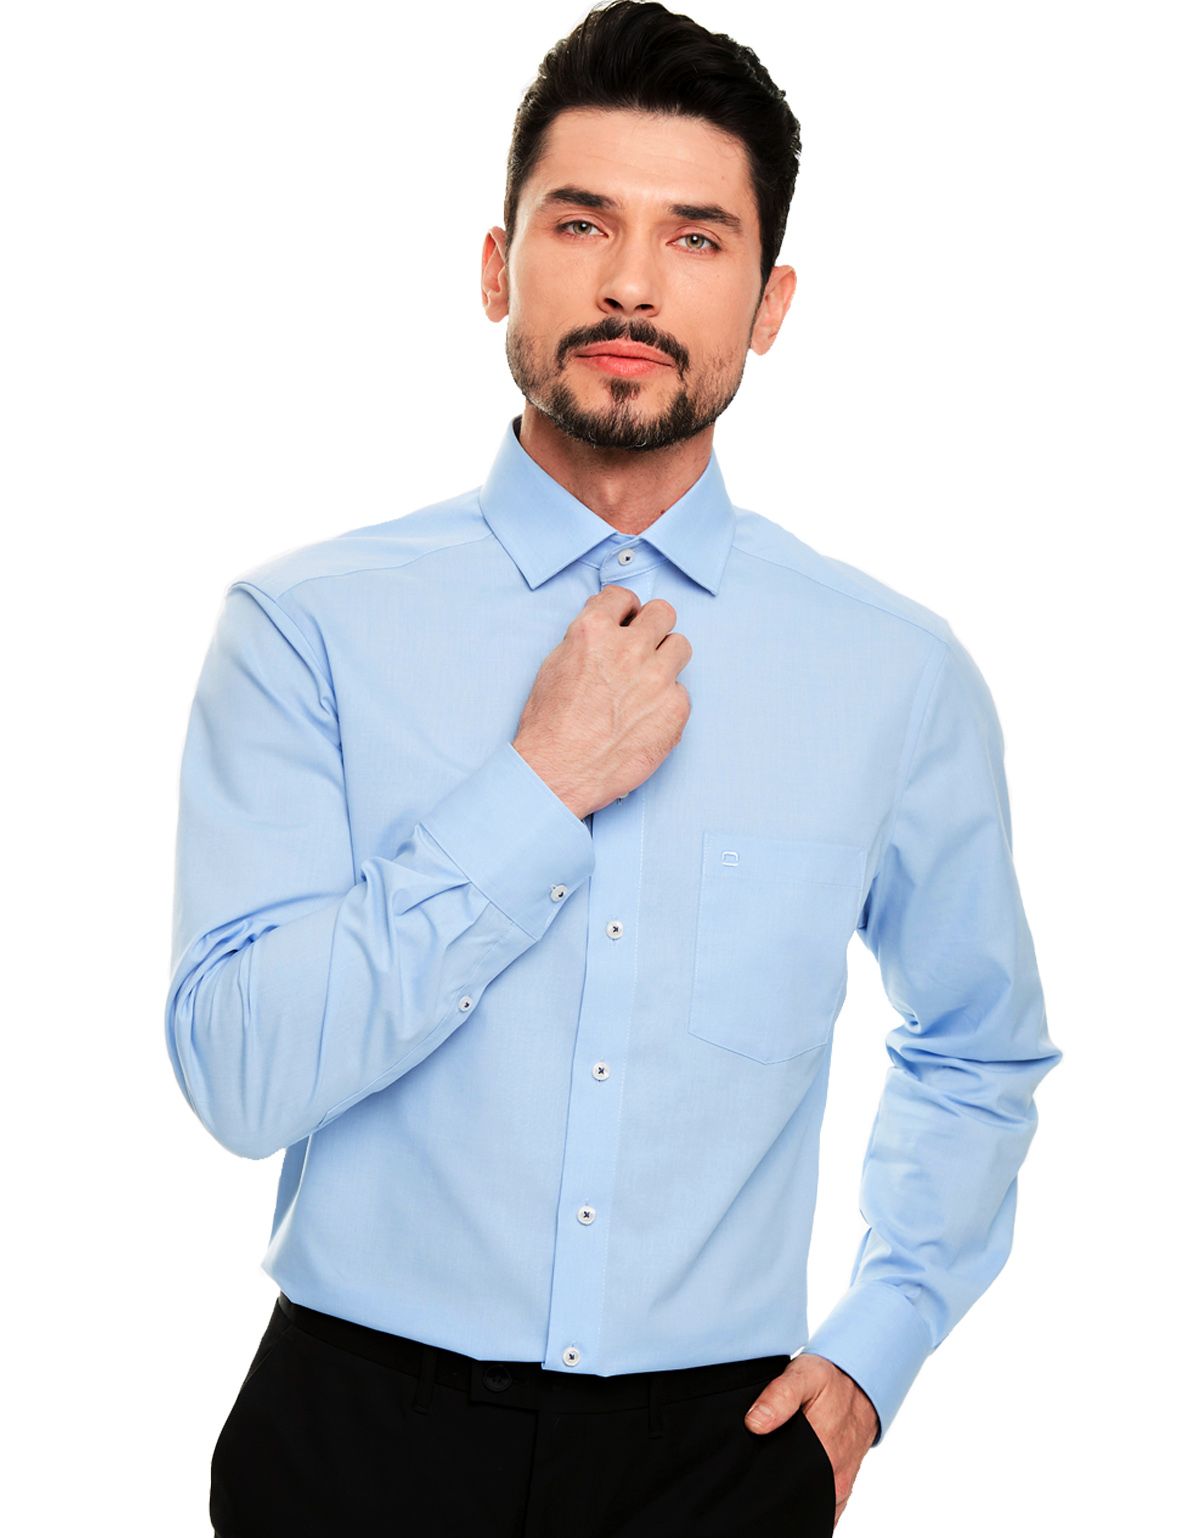 Рубашка мужская классическая OLYMP Luxor, modern fit[Голубой]